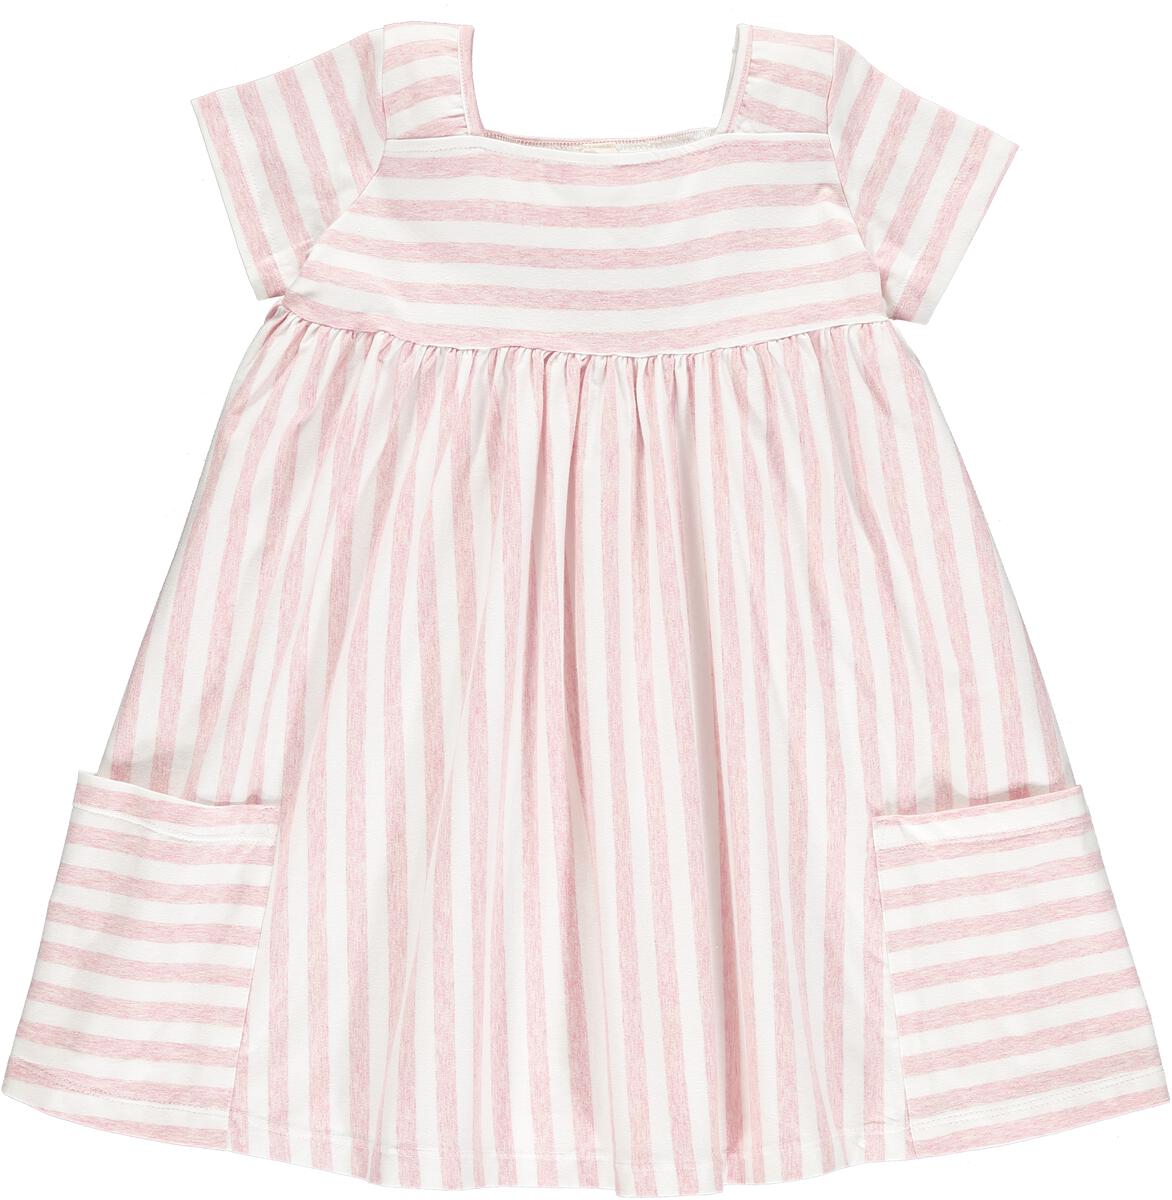 Vignette Rylie Dress - Pink Stripe